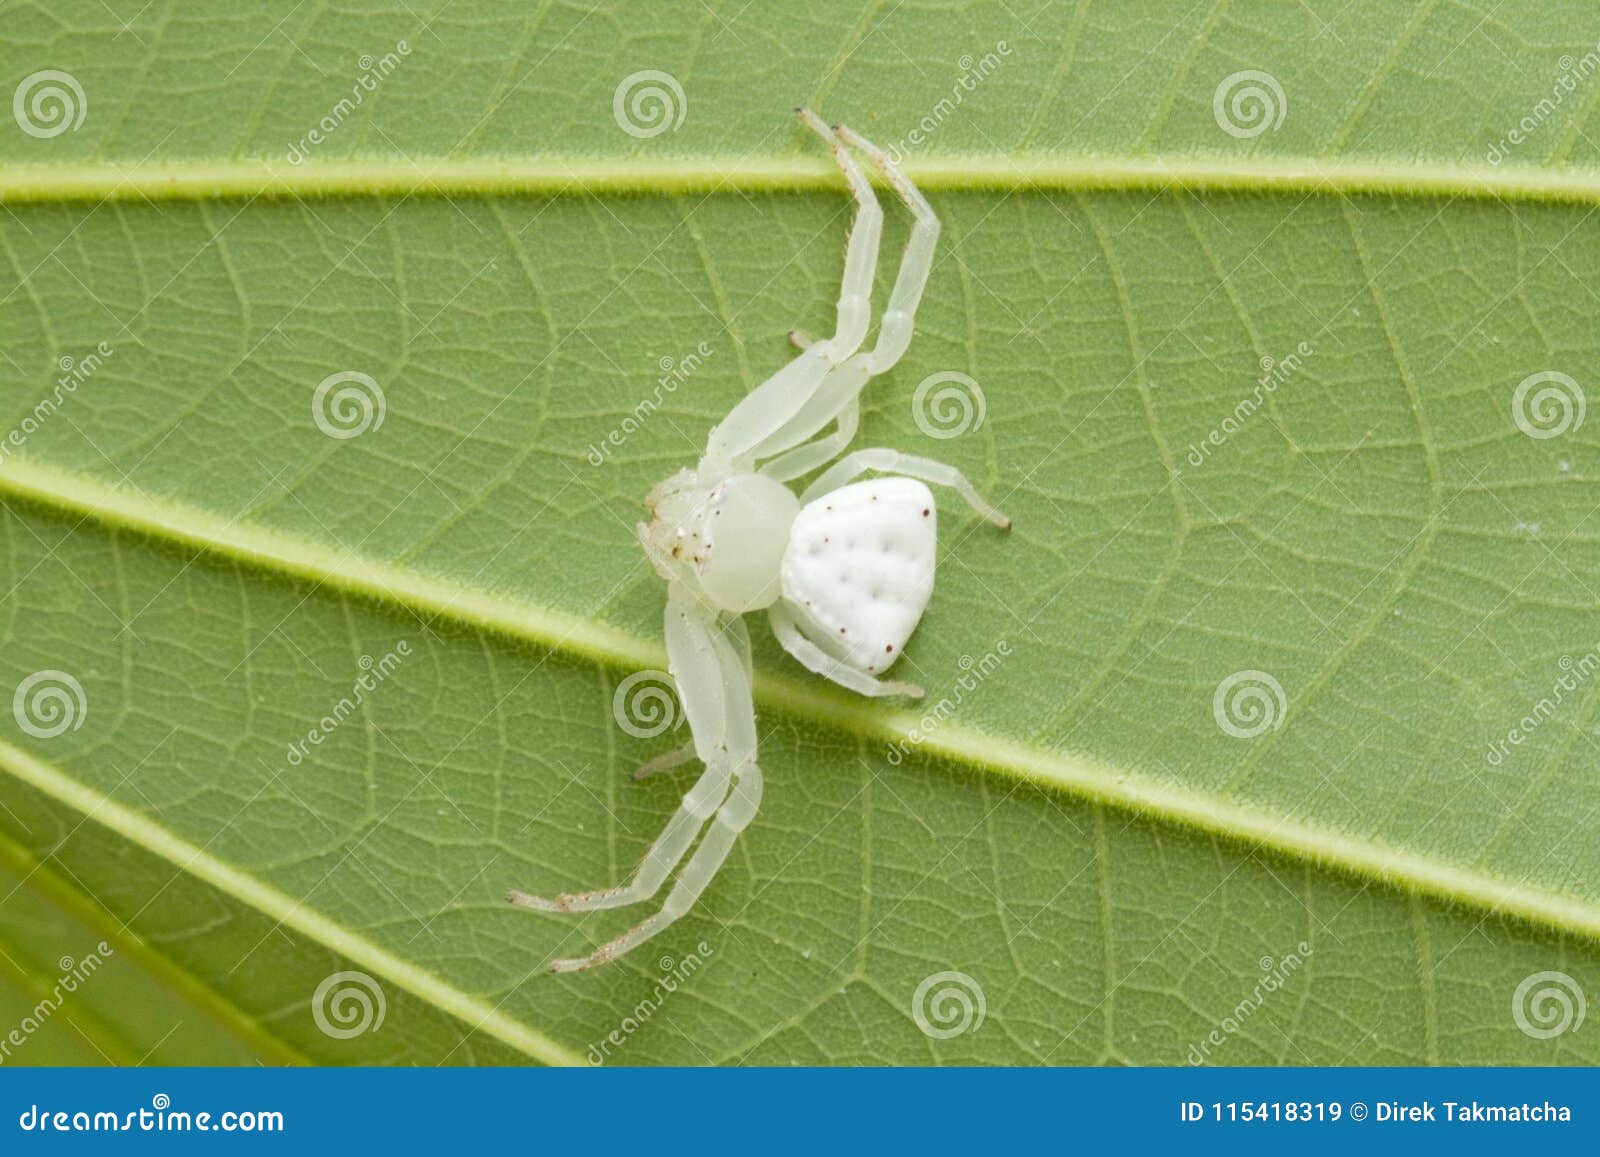 Белое брюшко не обращал внимания на писк. Белый паук. Паук белый с треугольным брюшком. Зеленый паук с белым брюшком. Маленький Беленький паучок.